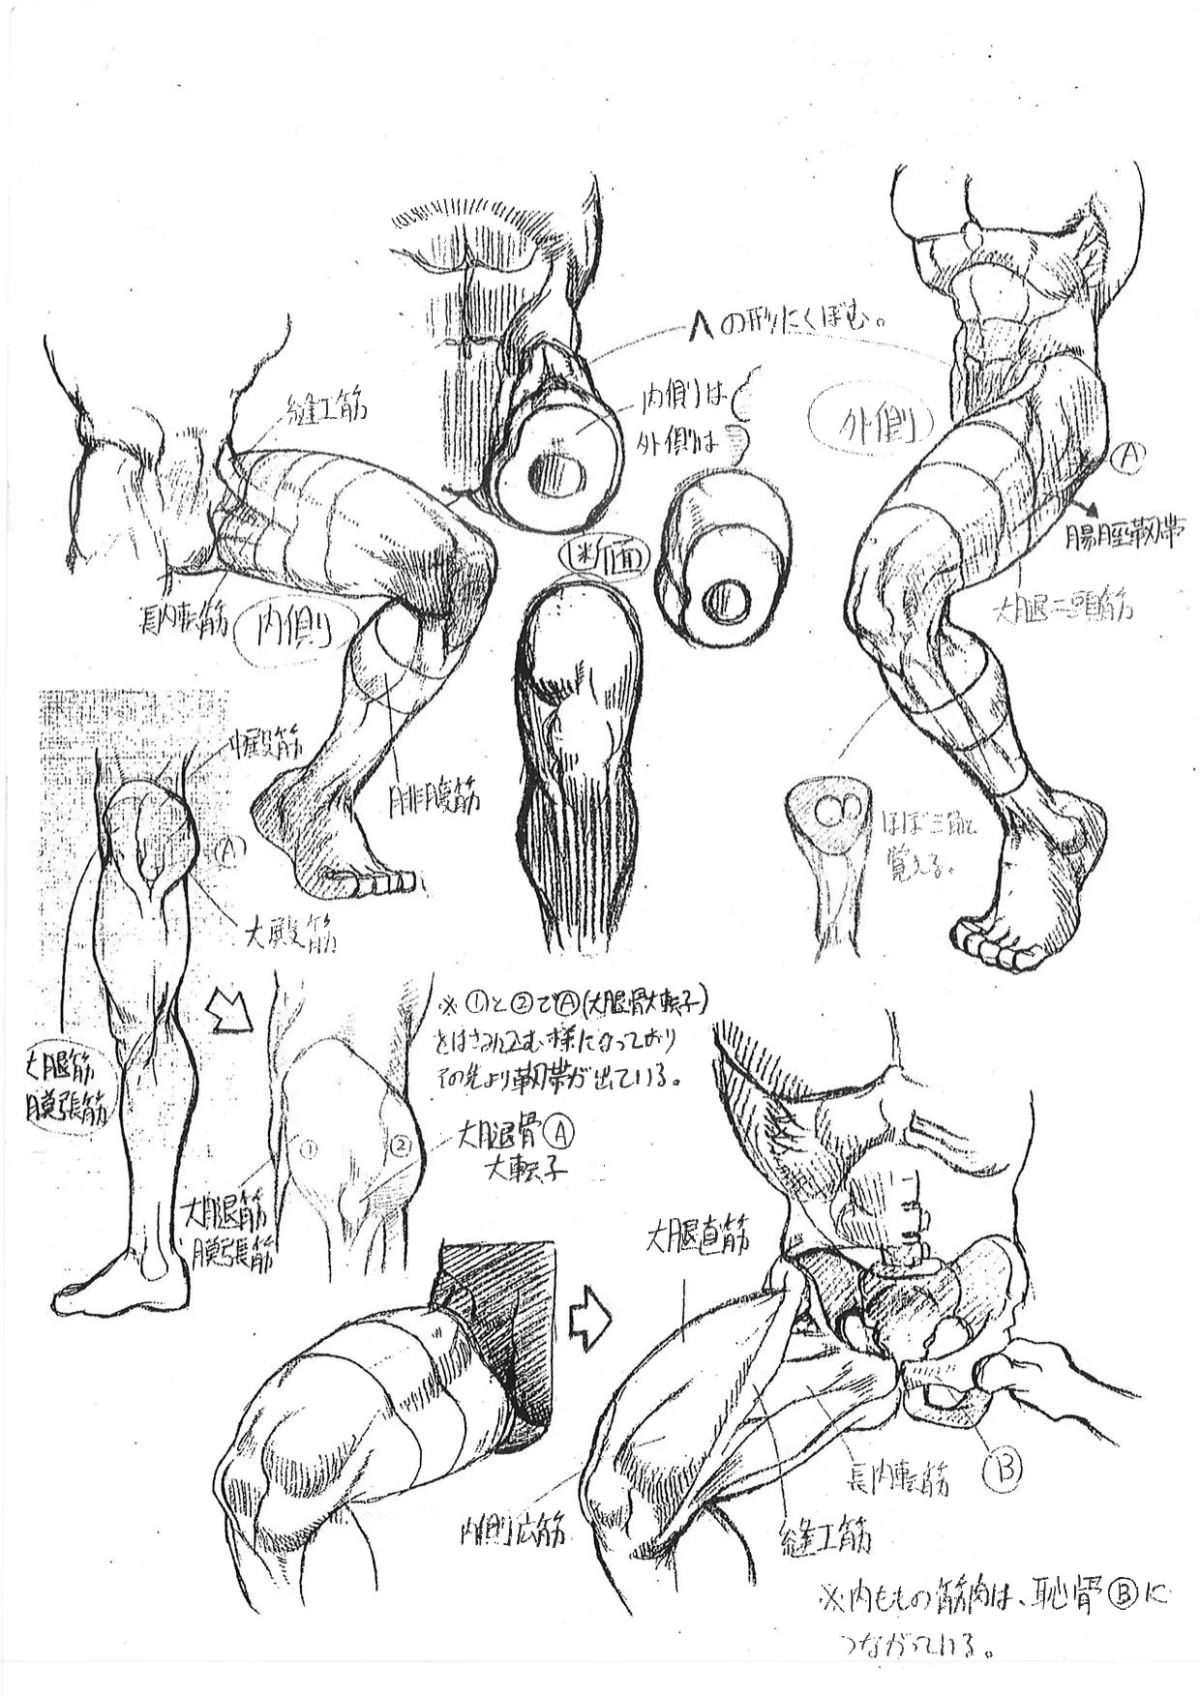 Capcom показала «шпаргалки» по анатомии для дизайнеров Street Fighter - фото 8